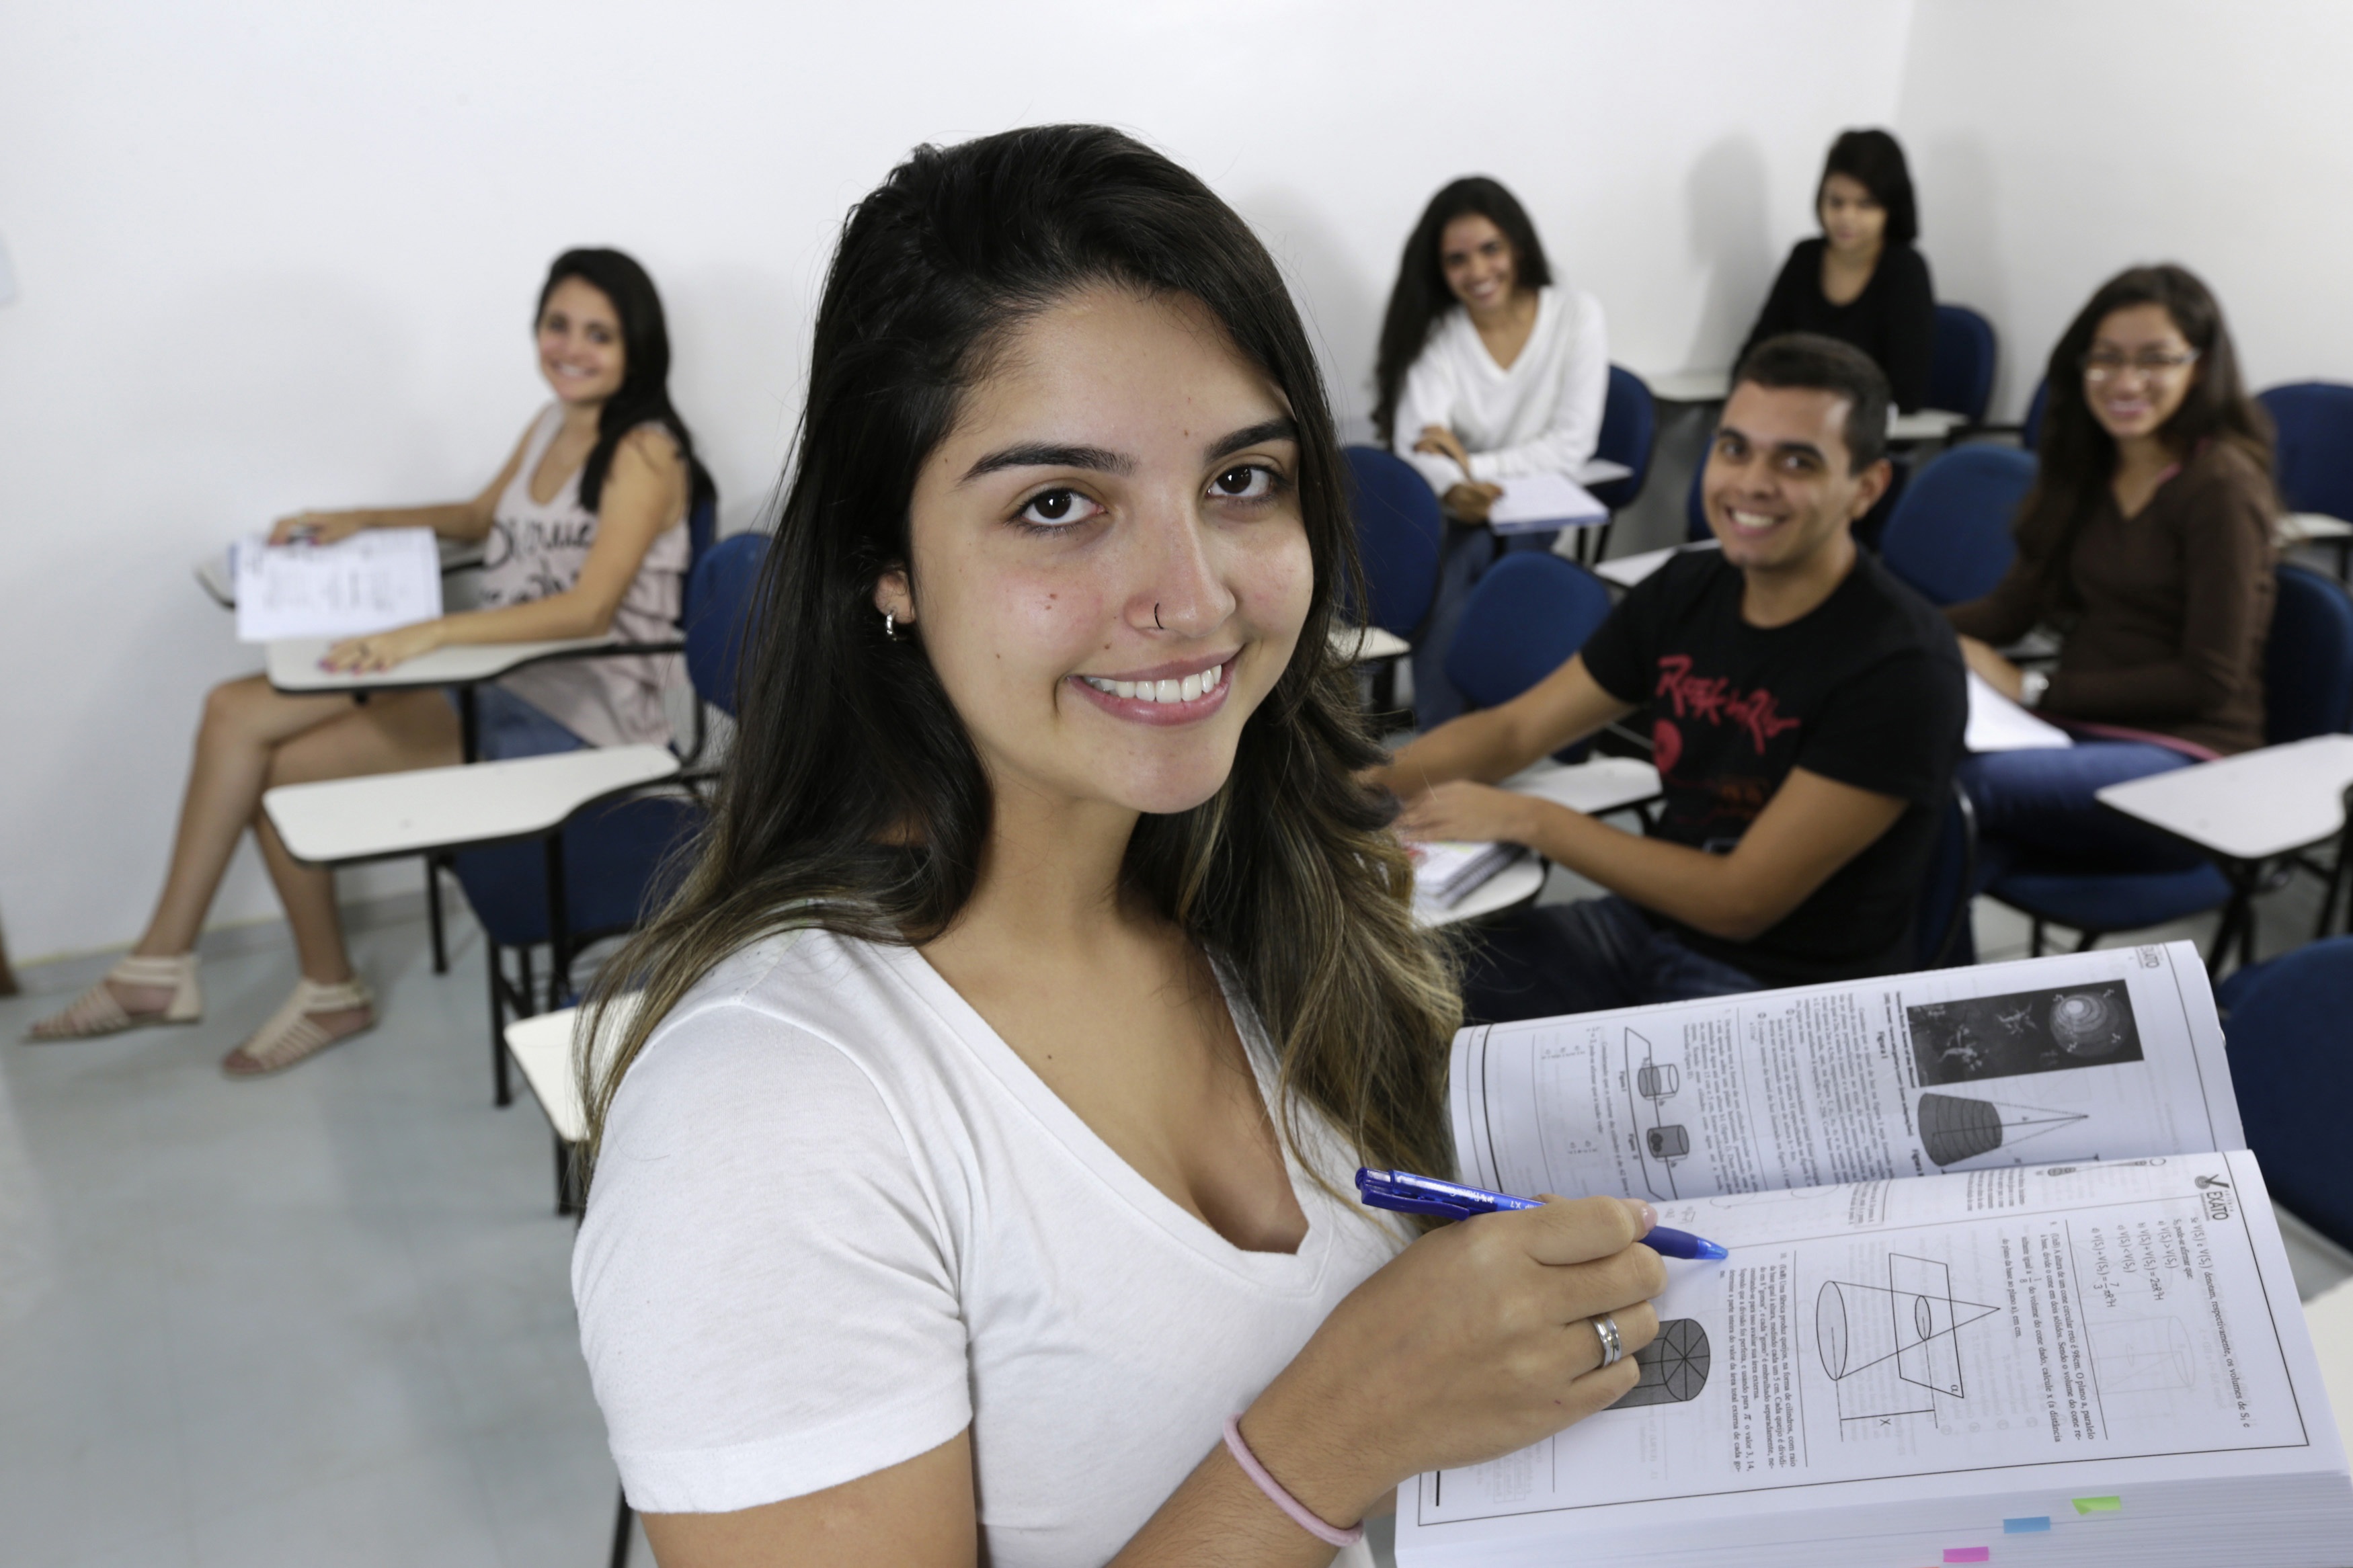 يمكن أن يسعى الطالب للحصول على تمويل خارجي من المؤسسات الدولية التي تساعد الطلبة في رسومهم الدراسية مثل: مؤسسة روتاري، ومنظمة زونتا (رويترز)